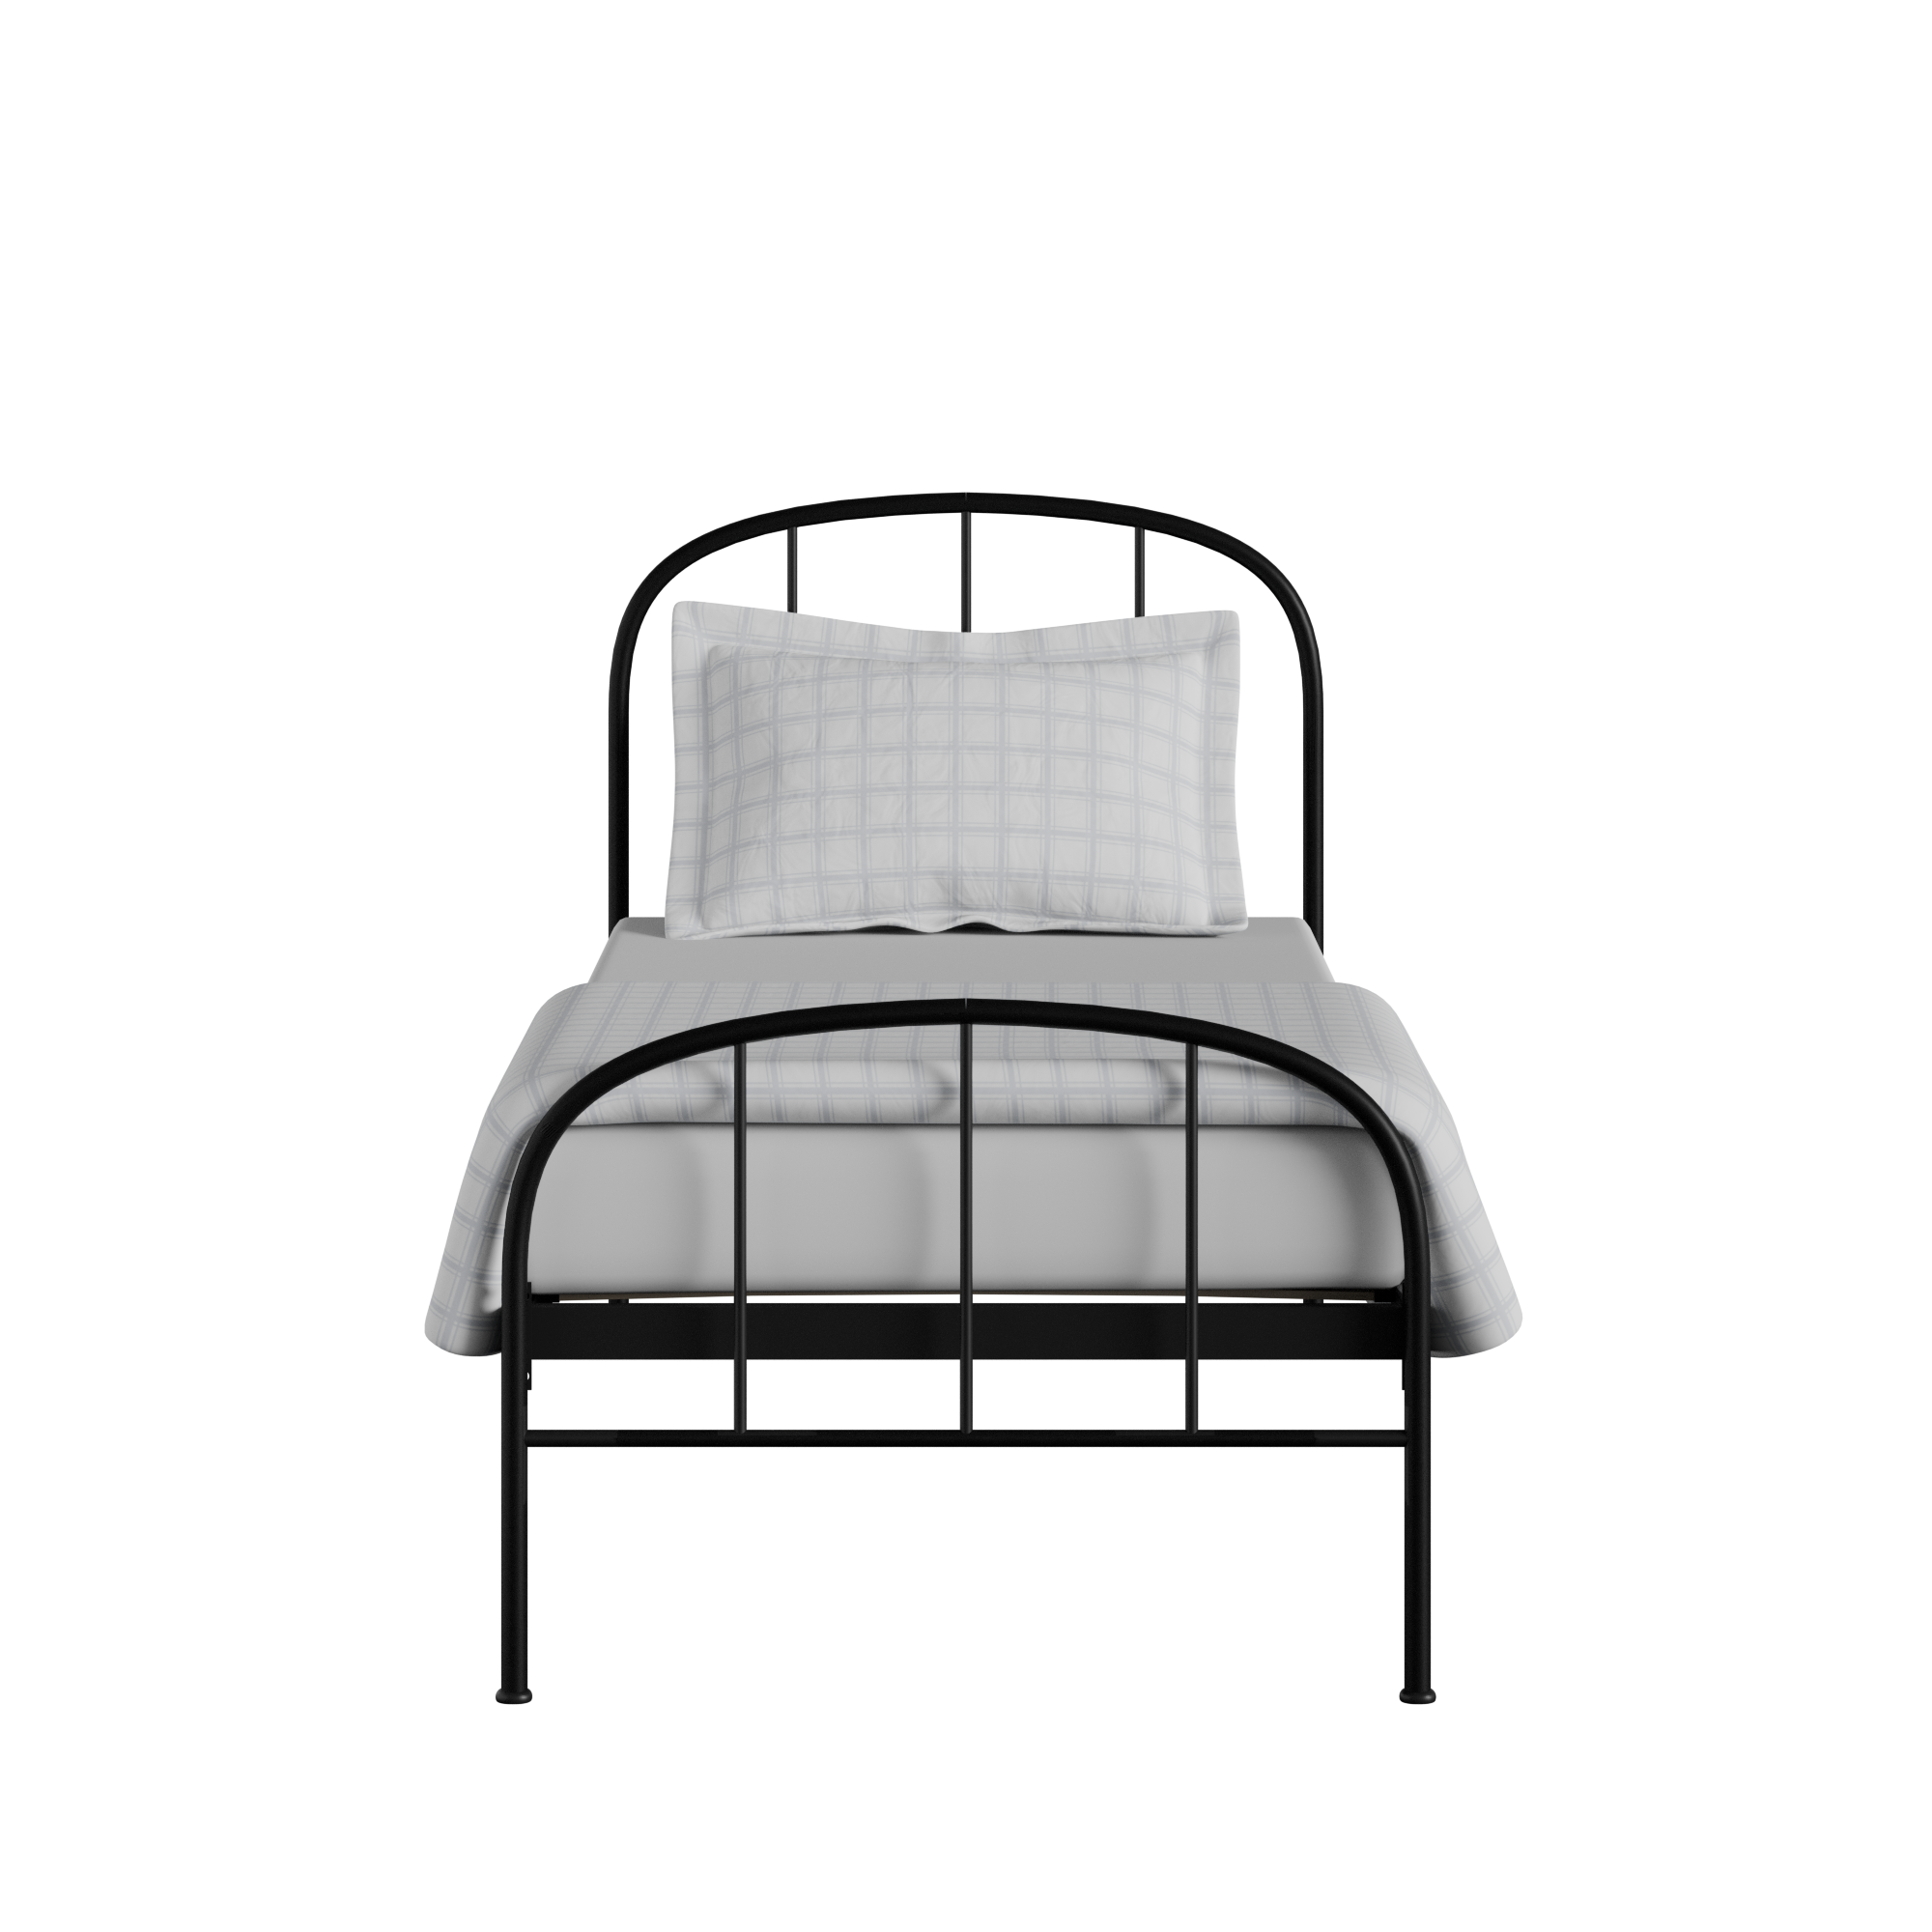 Waldo iron/metal single bed in black